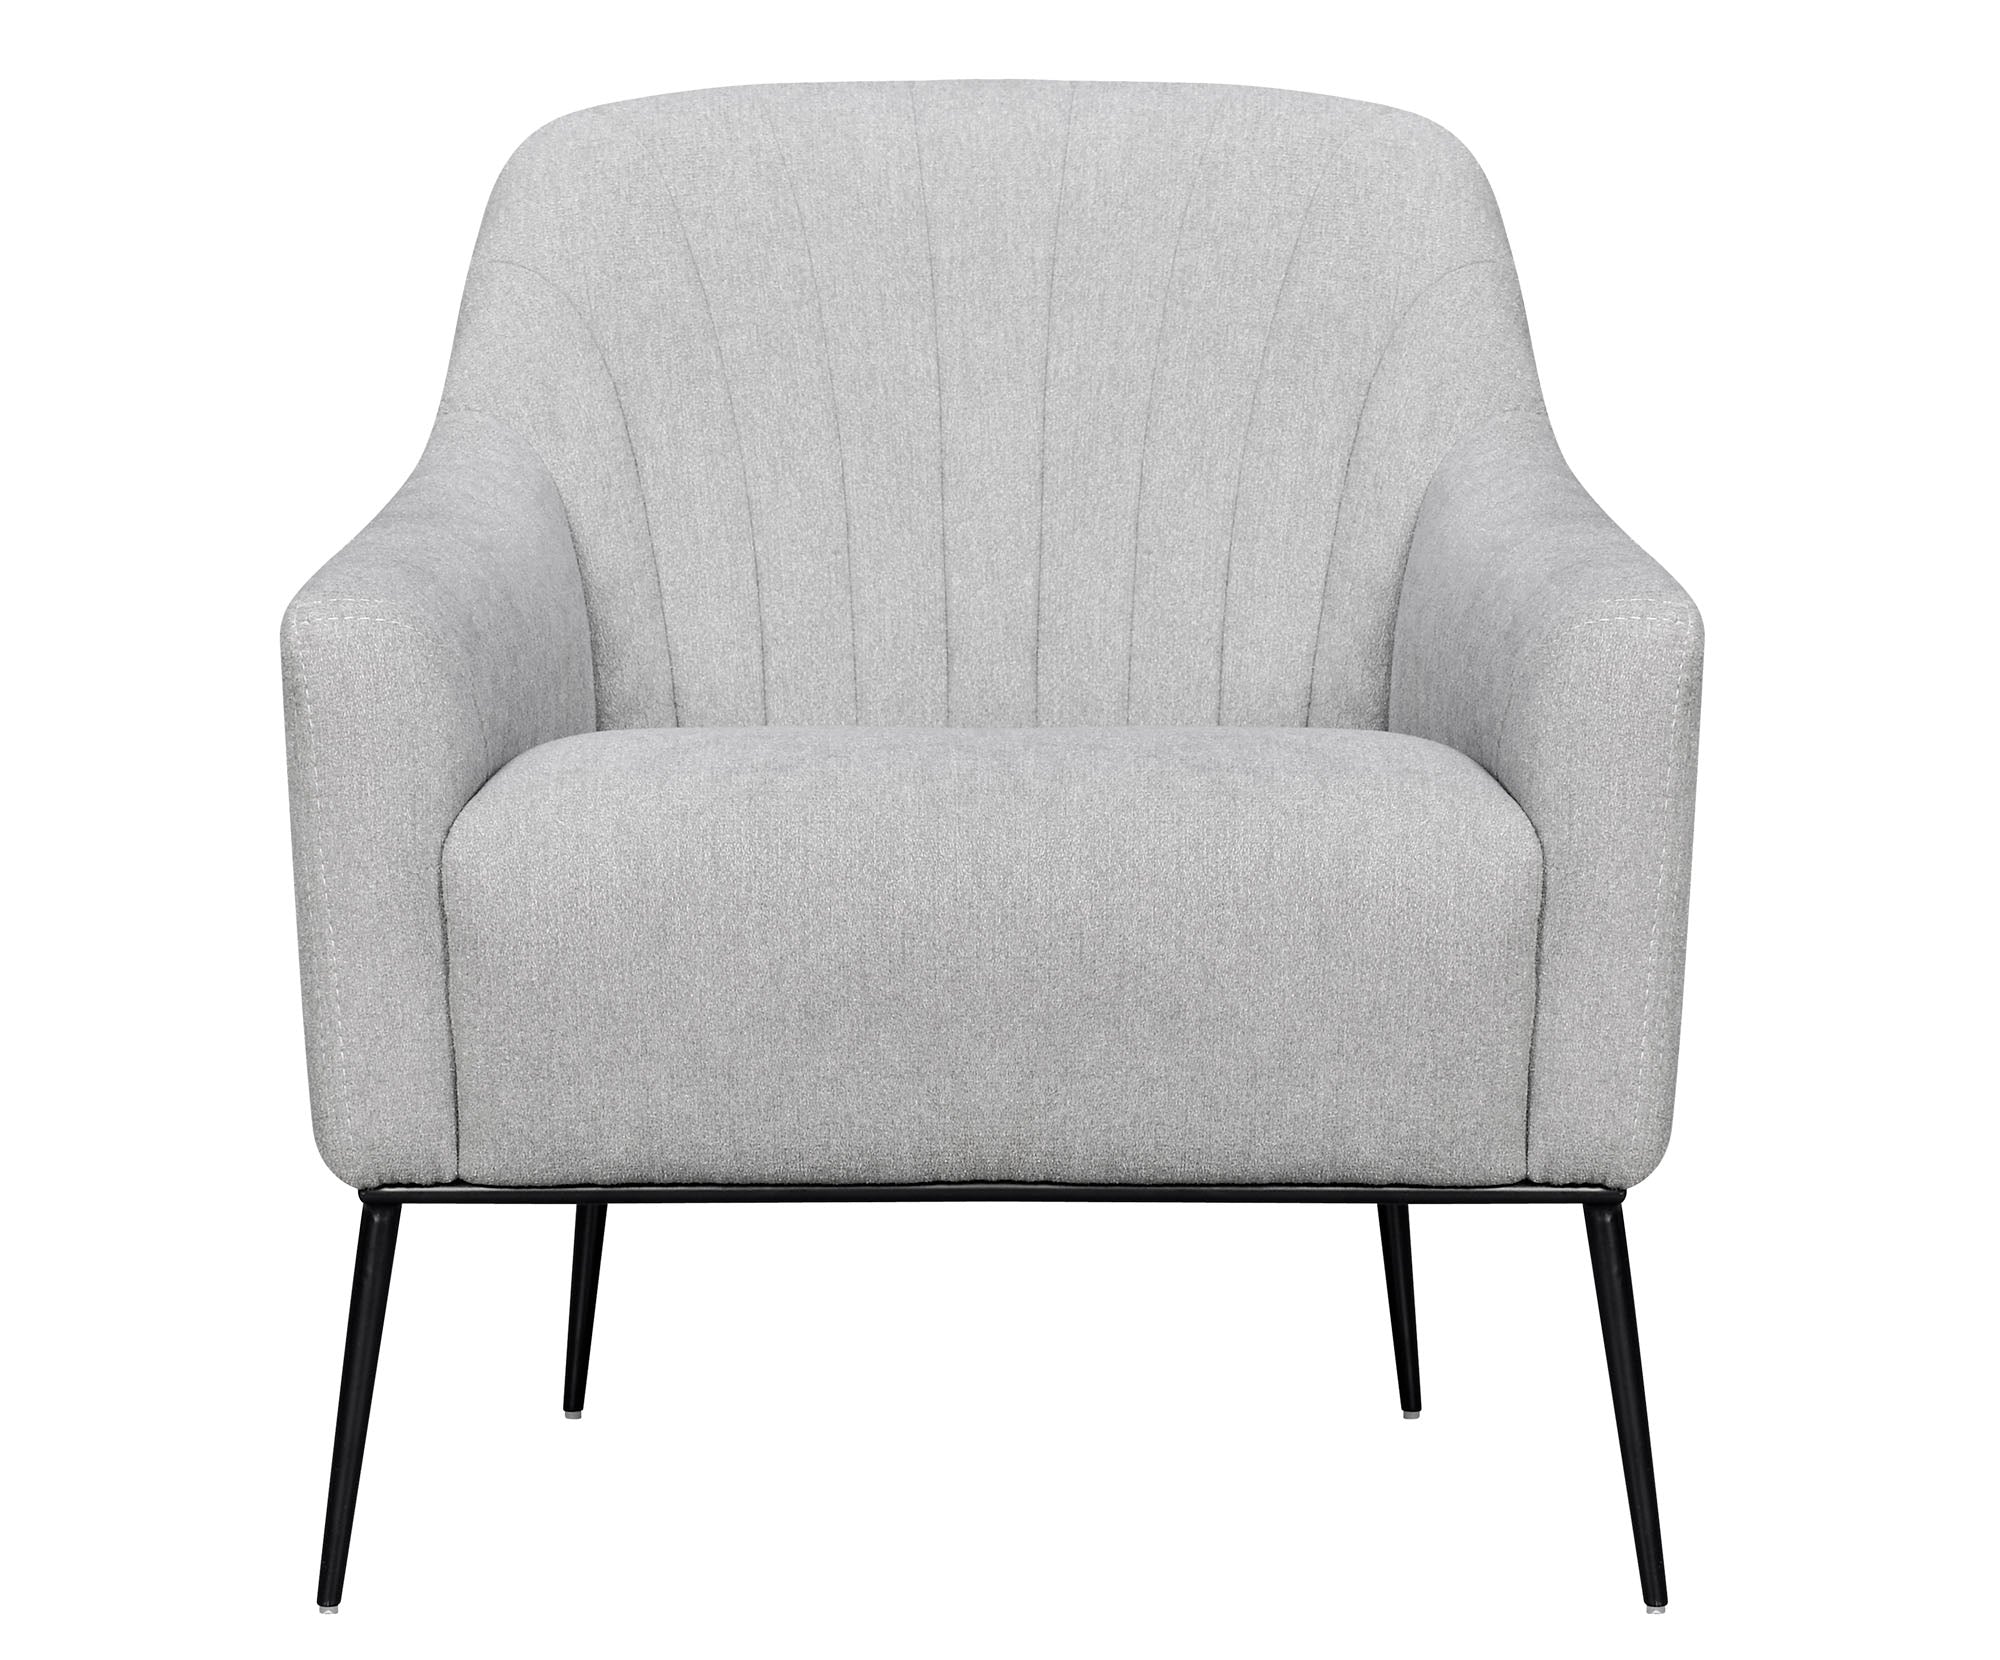 Ella Channel Accent Chair - MJM Furniture